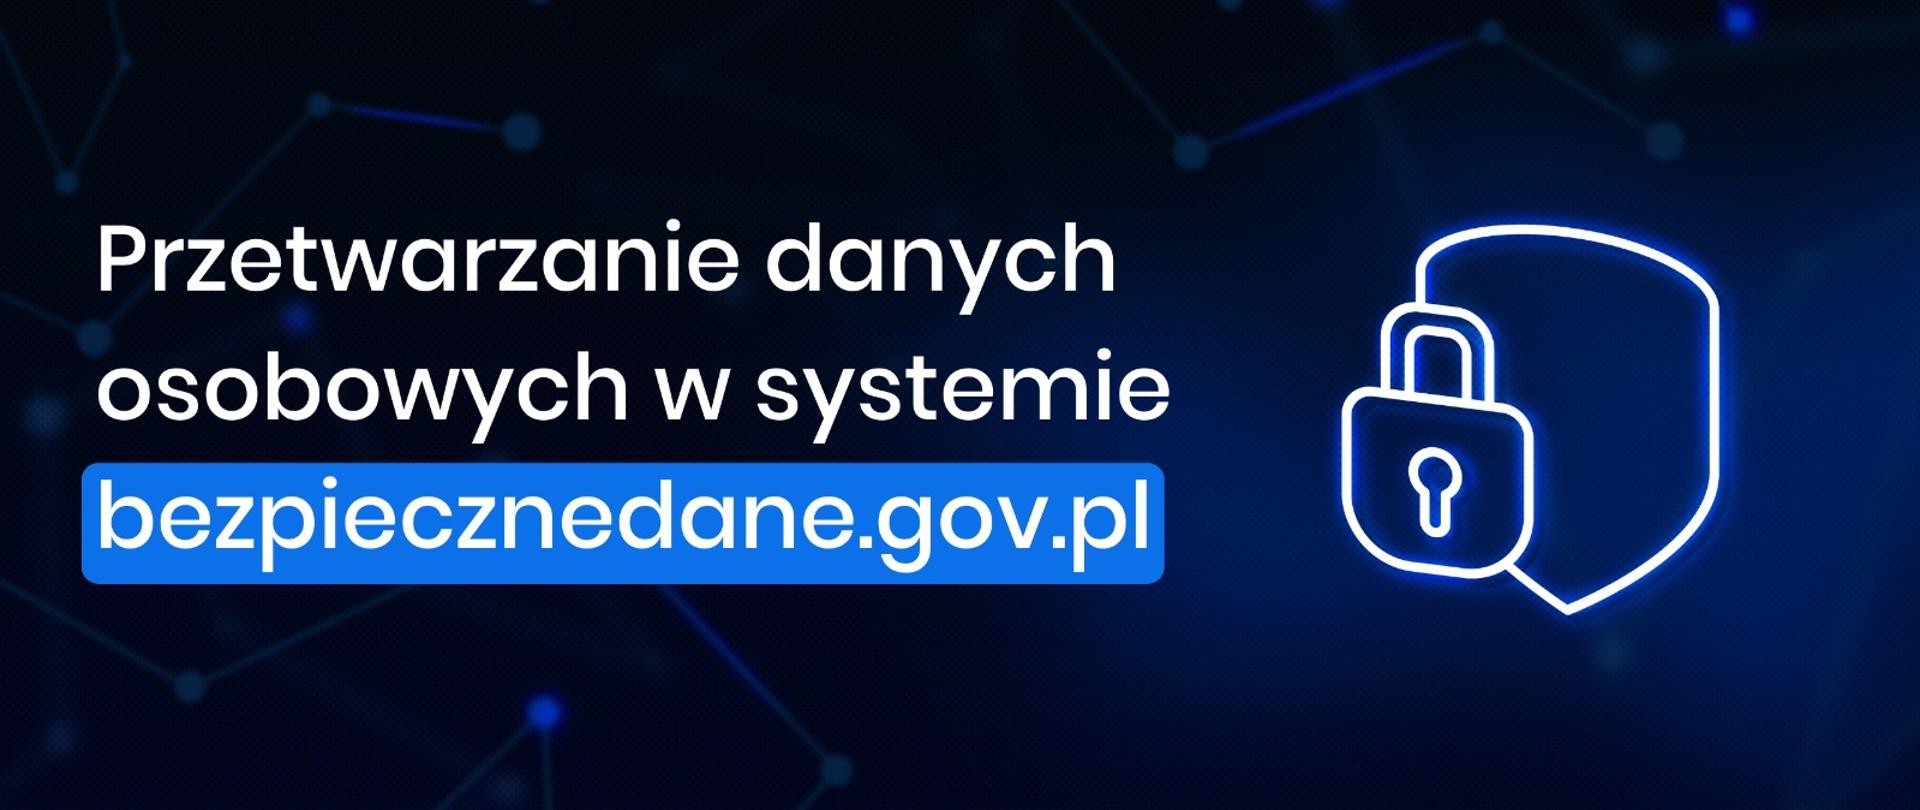 
Przetwarzanie danych osobowych w systemie bezpiecznedane.gov.pl
